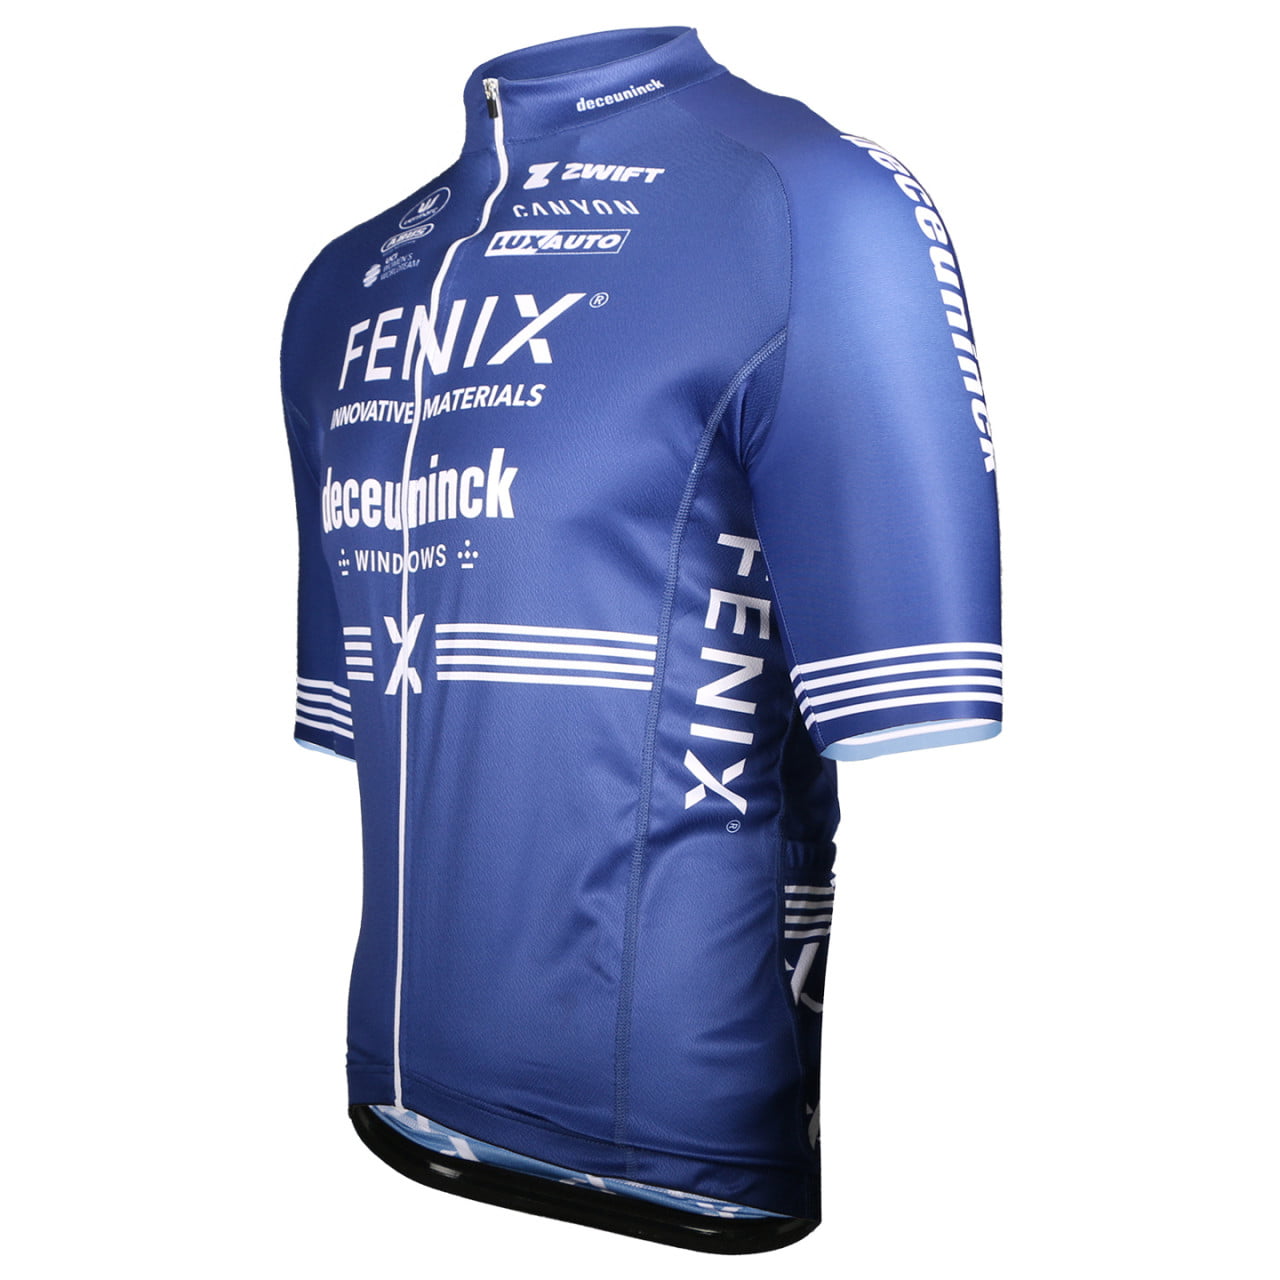 FENIX-DECEUNINCK fietsshirt met korte mouwen 2024